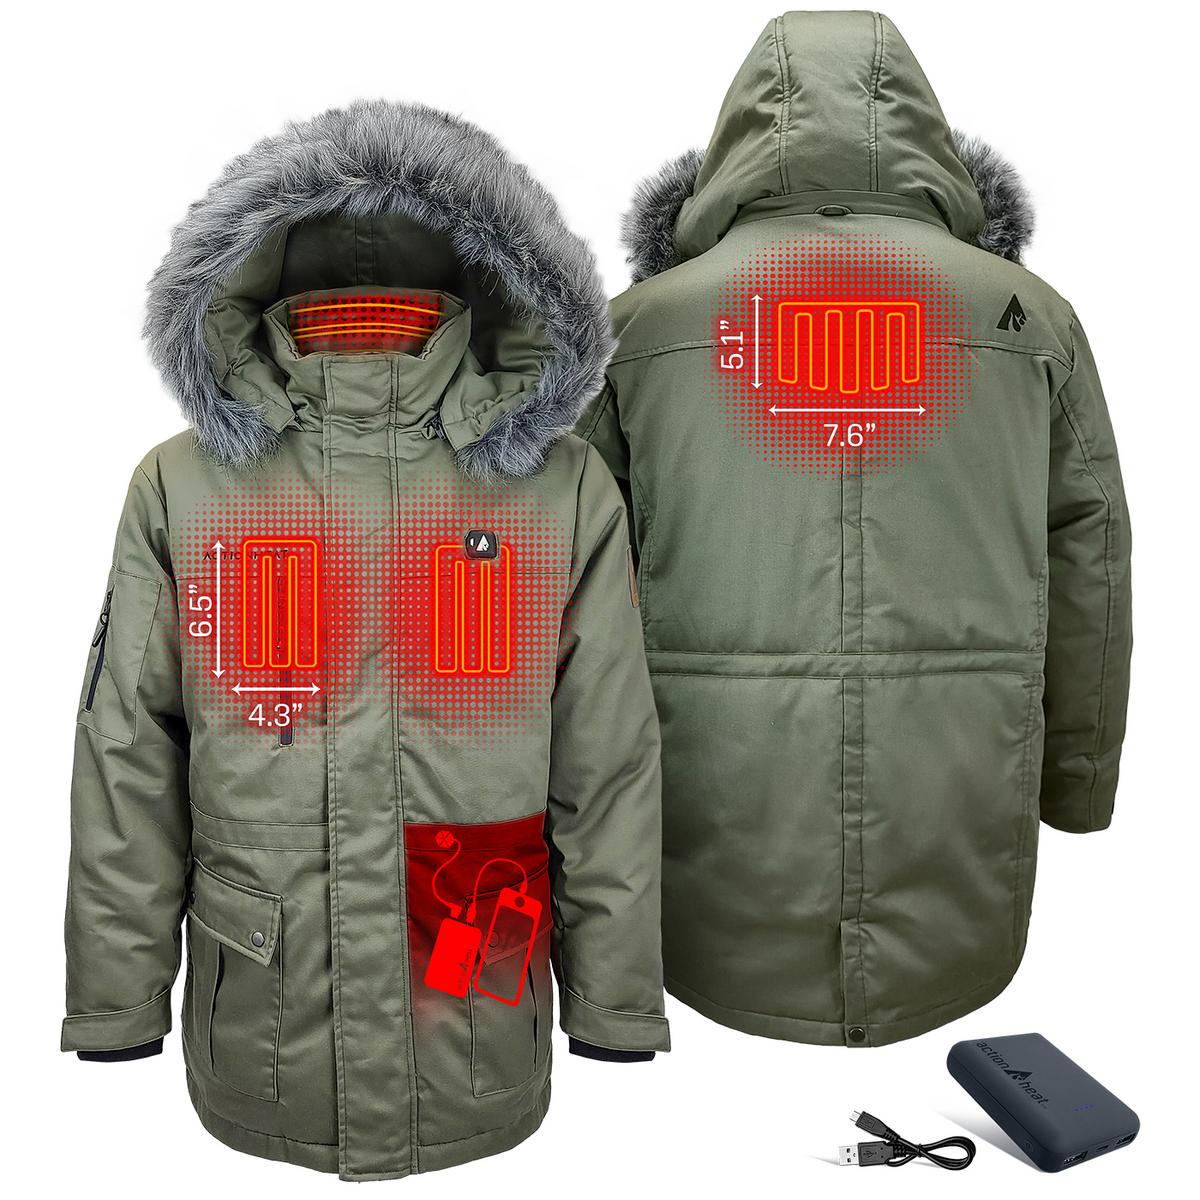 ActionHeat 5V Men's Battery Heated Parka Jacket - Back